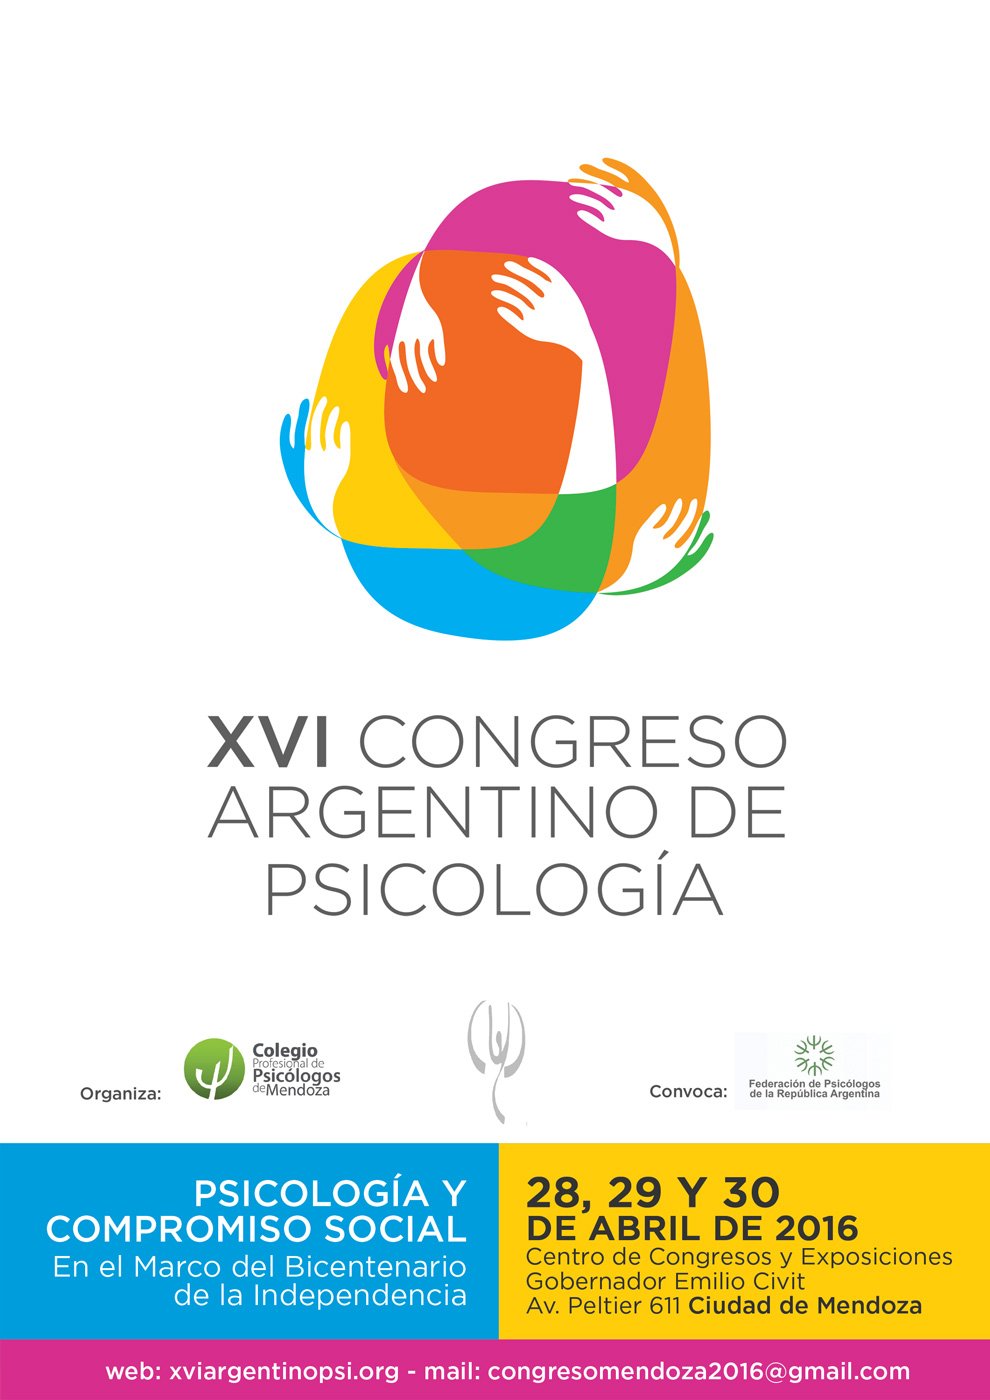 XVI Congreso Argentino de Psicología “Psicología y Compromiso Social